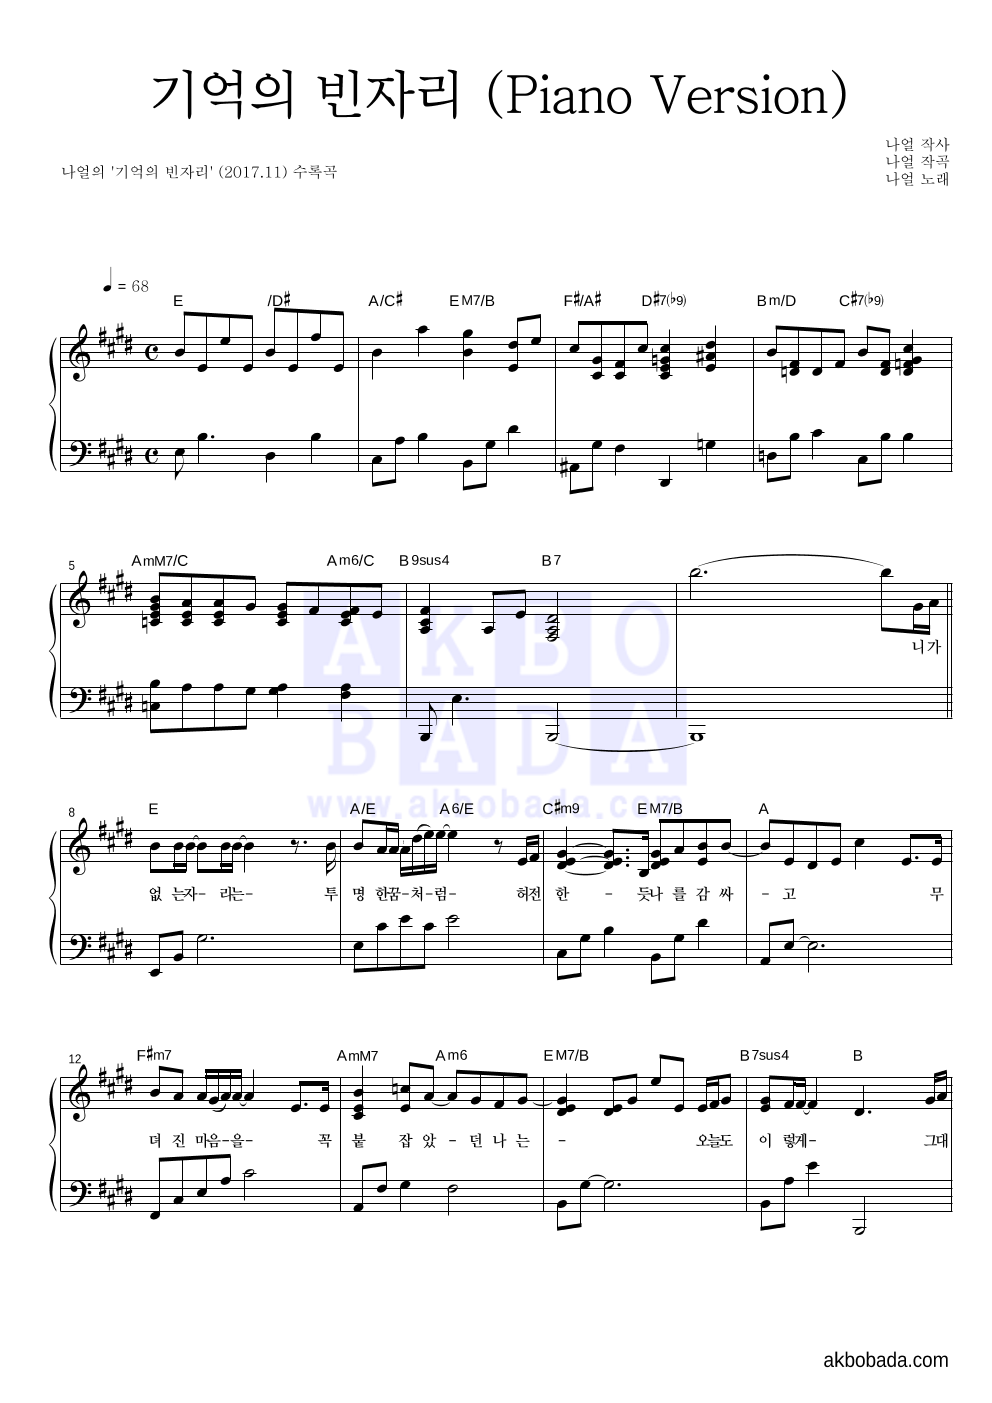 나얼 - 기억의 빈자리 (Piano Version) 피아노 2단 악보 